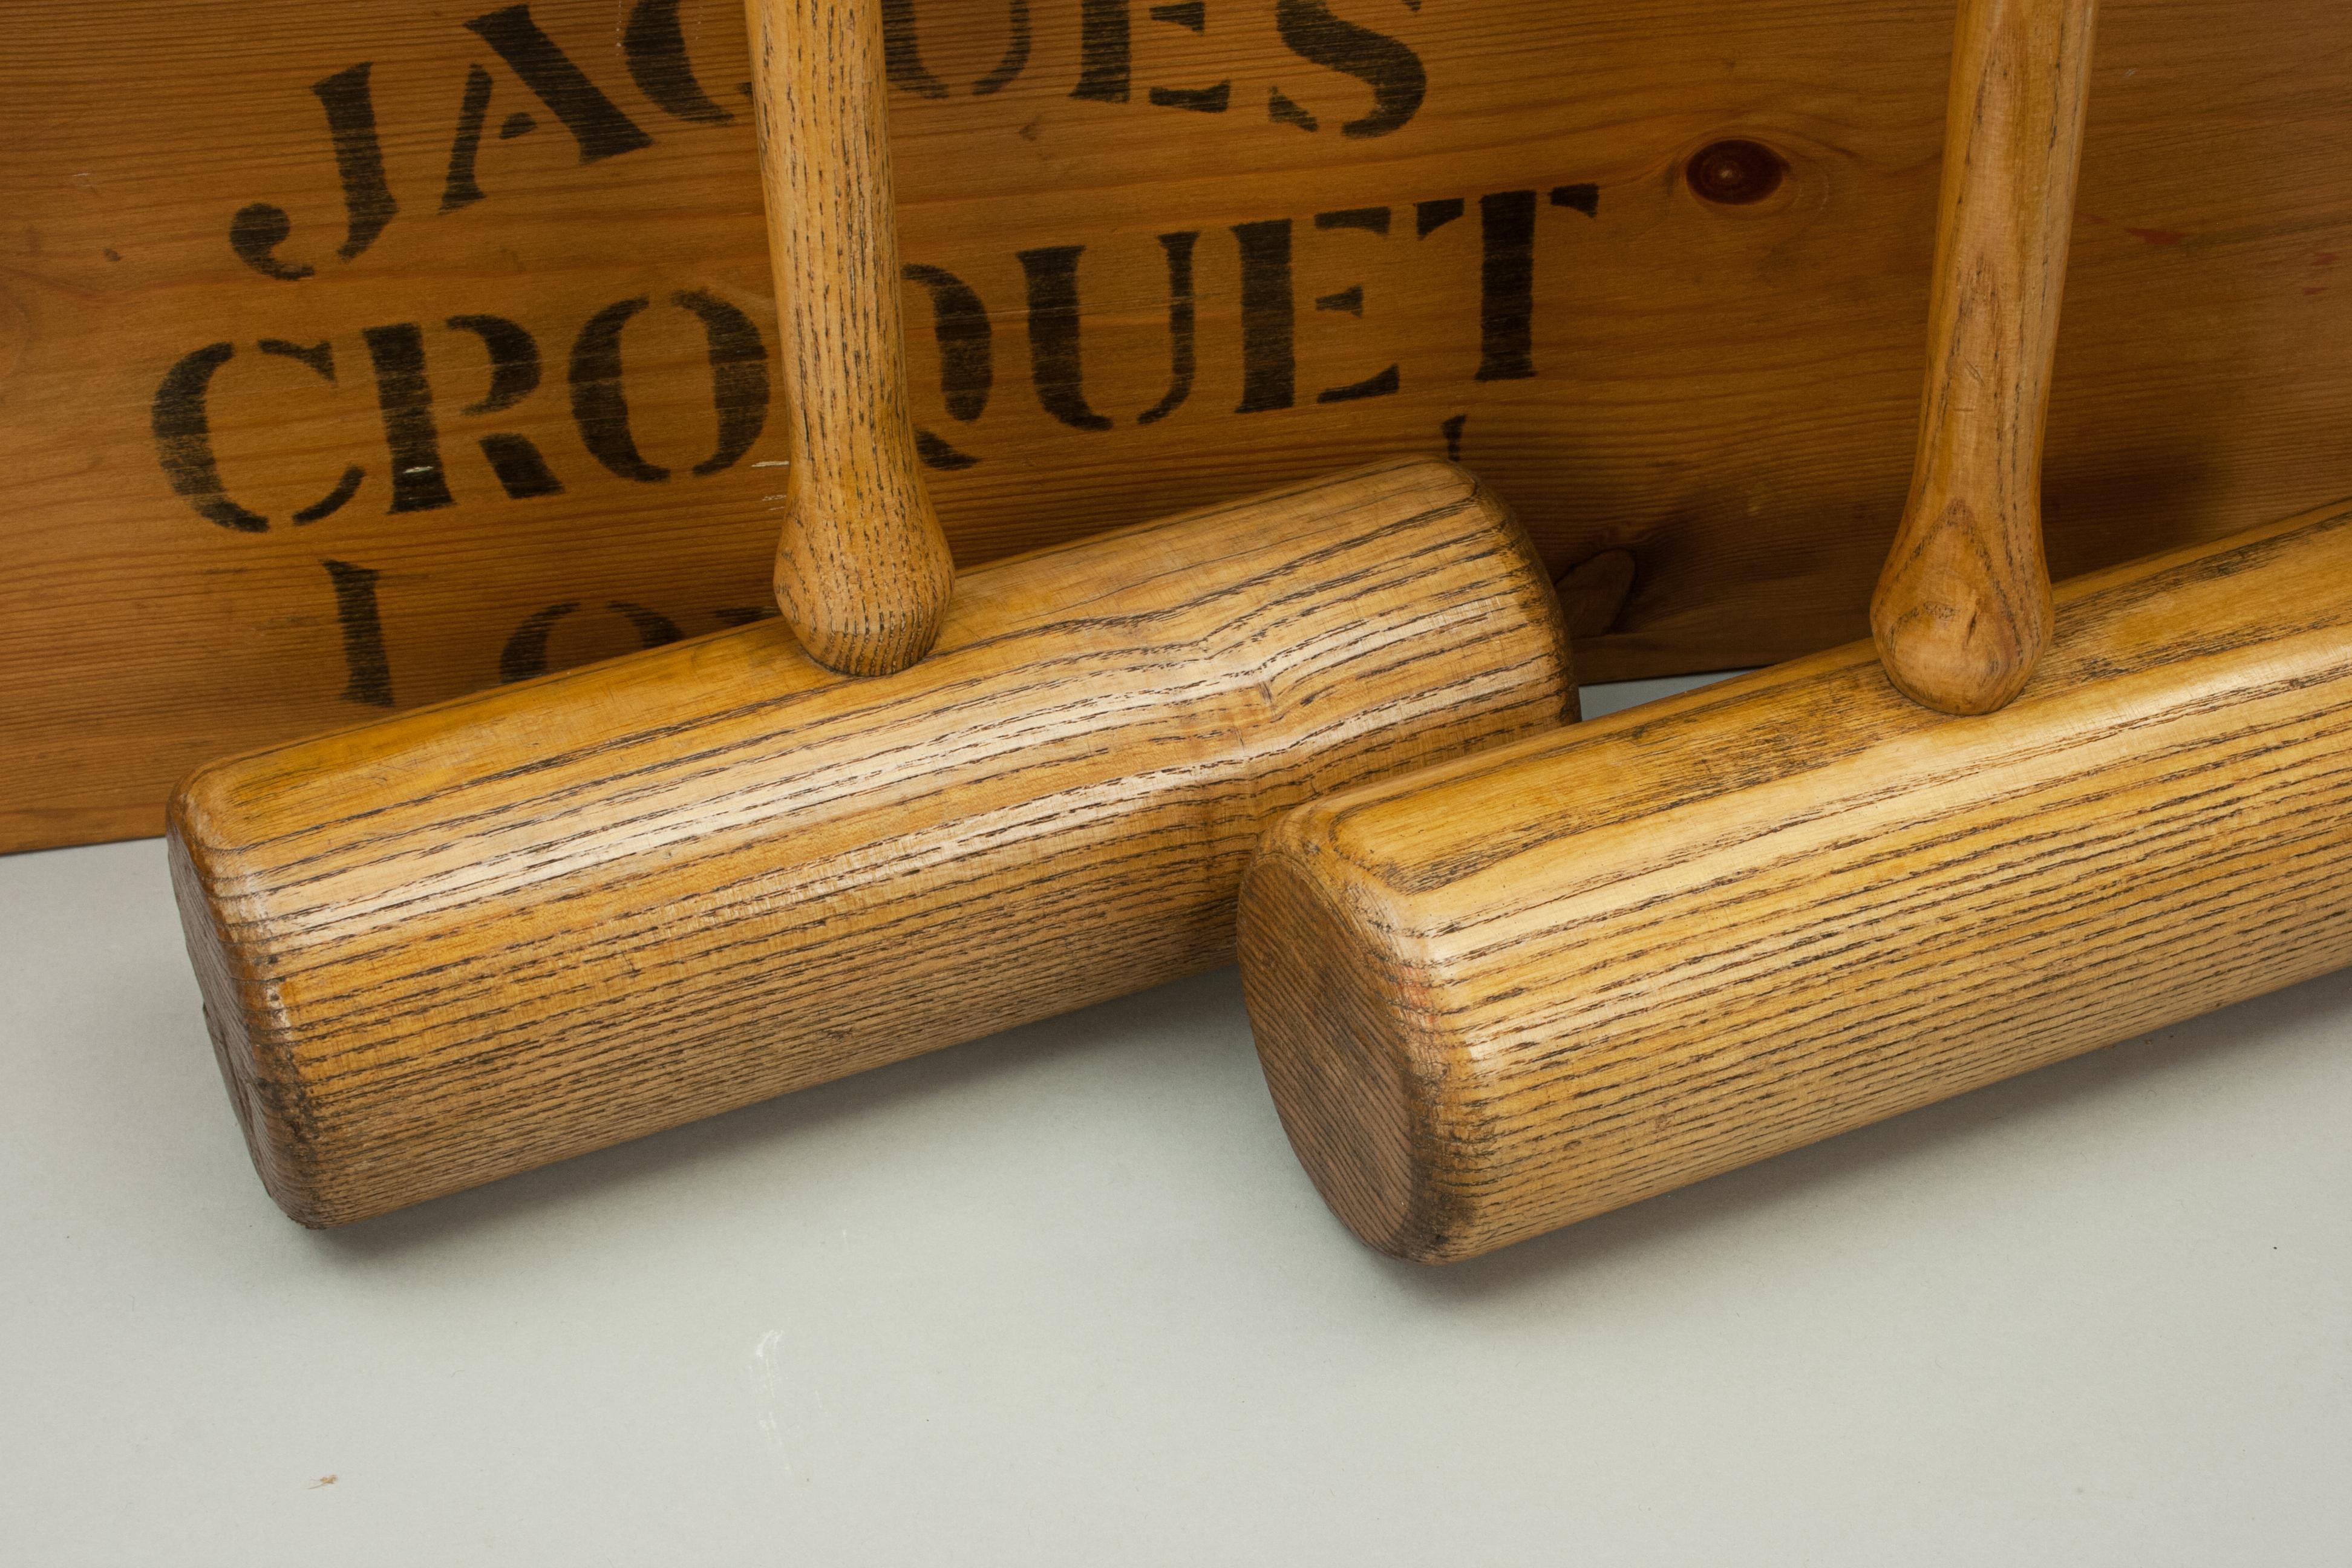 20th Century Antique Jaques 'Corrigrip' Croquet Set in Original Pine Box